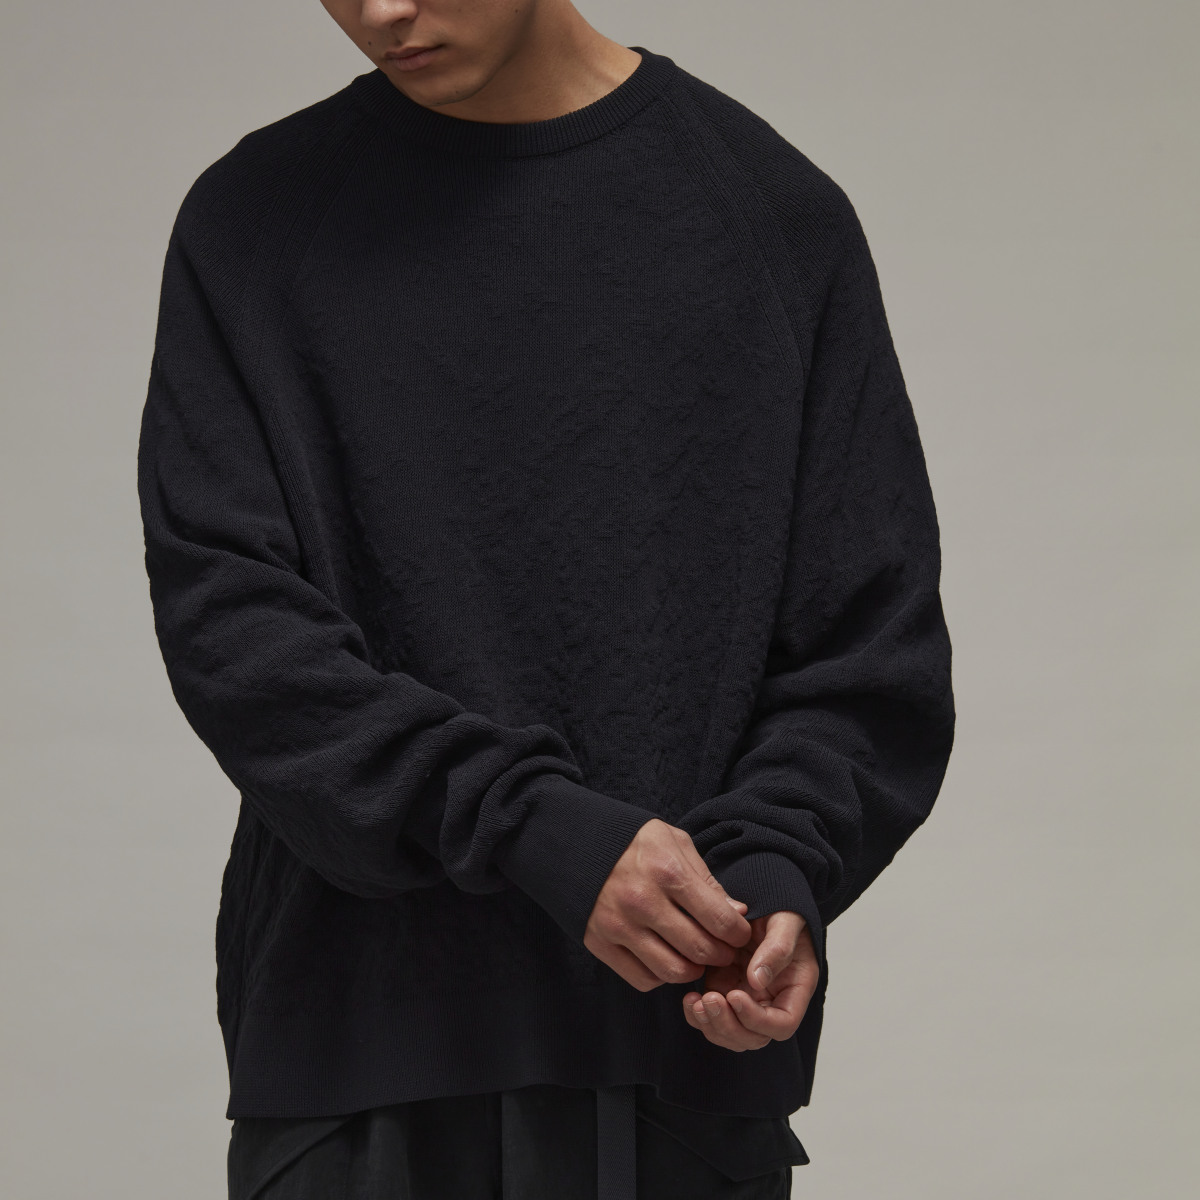 Adidas Y-3 Knit Sweatshirt. 9